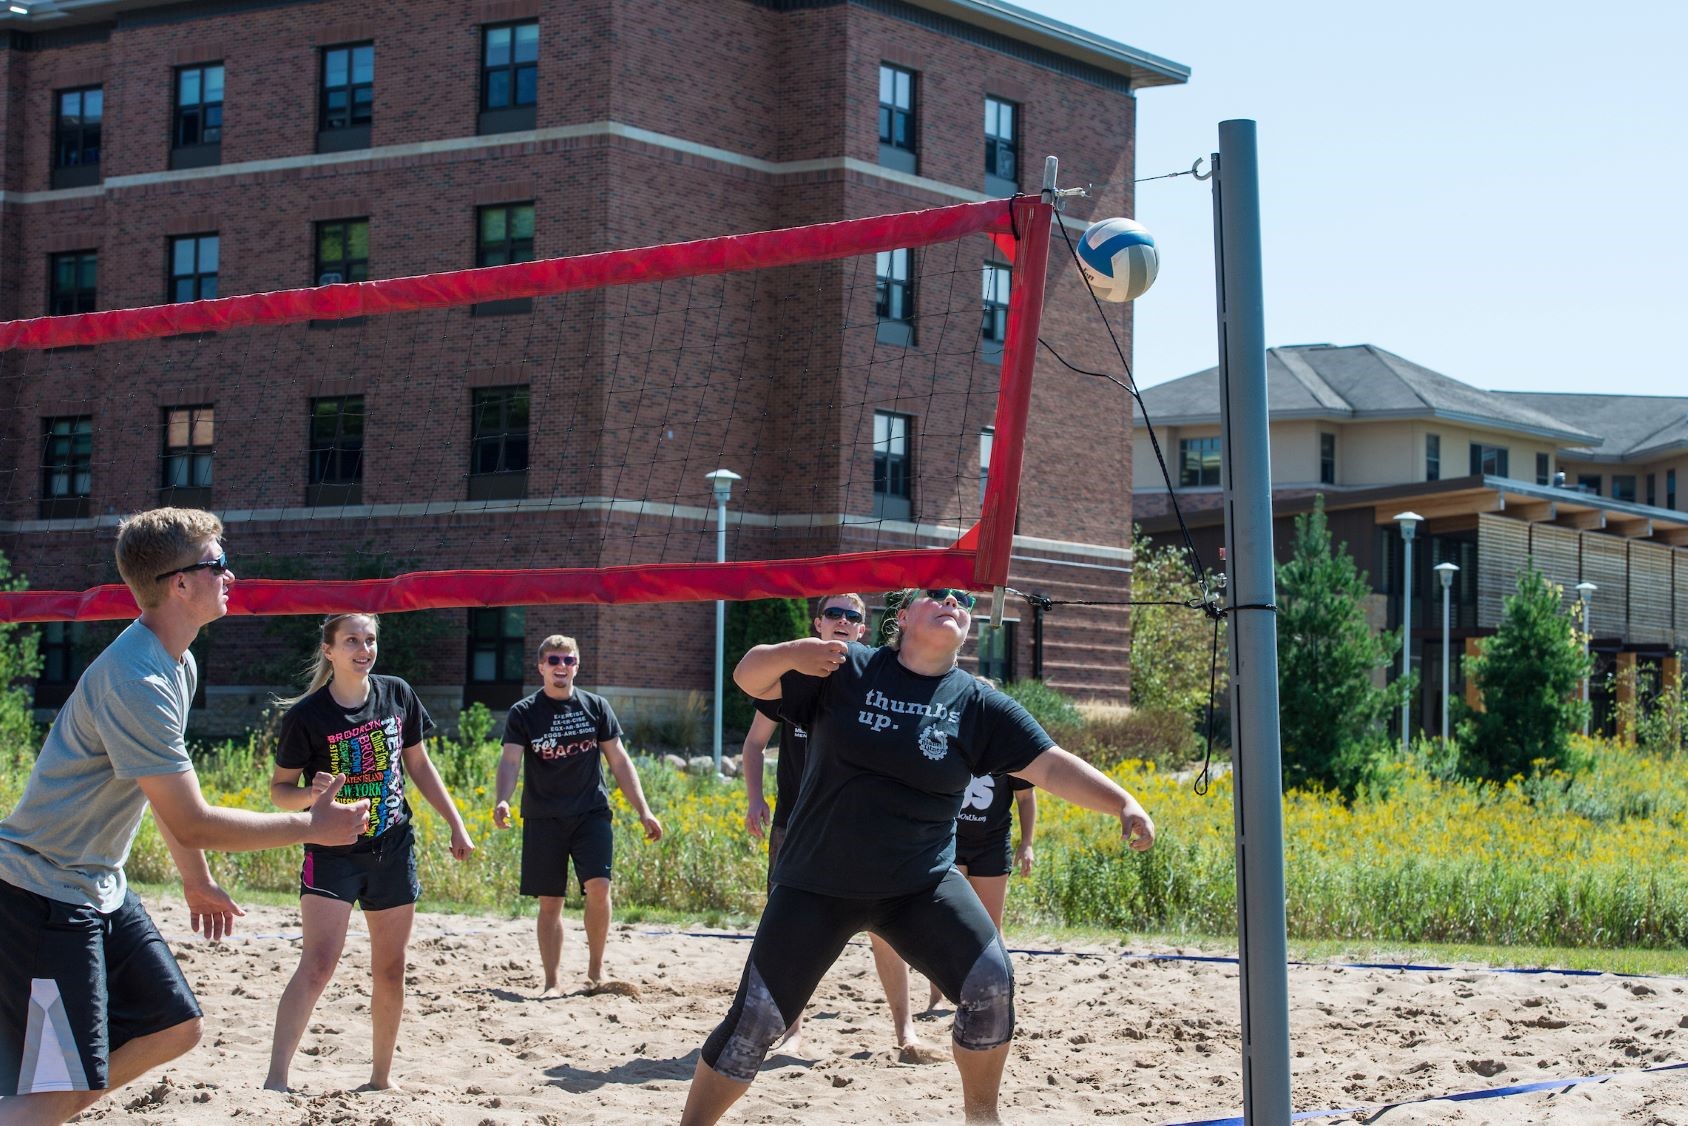 Sand-Volleyball-tournament-09092017-KMH-5